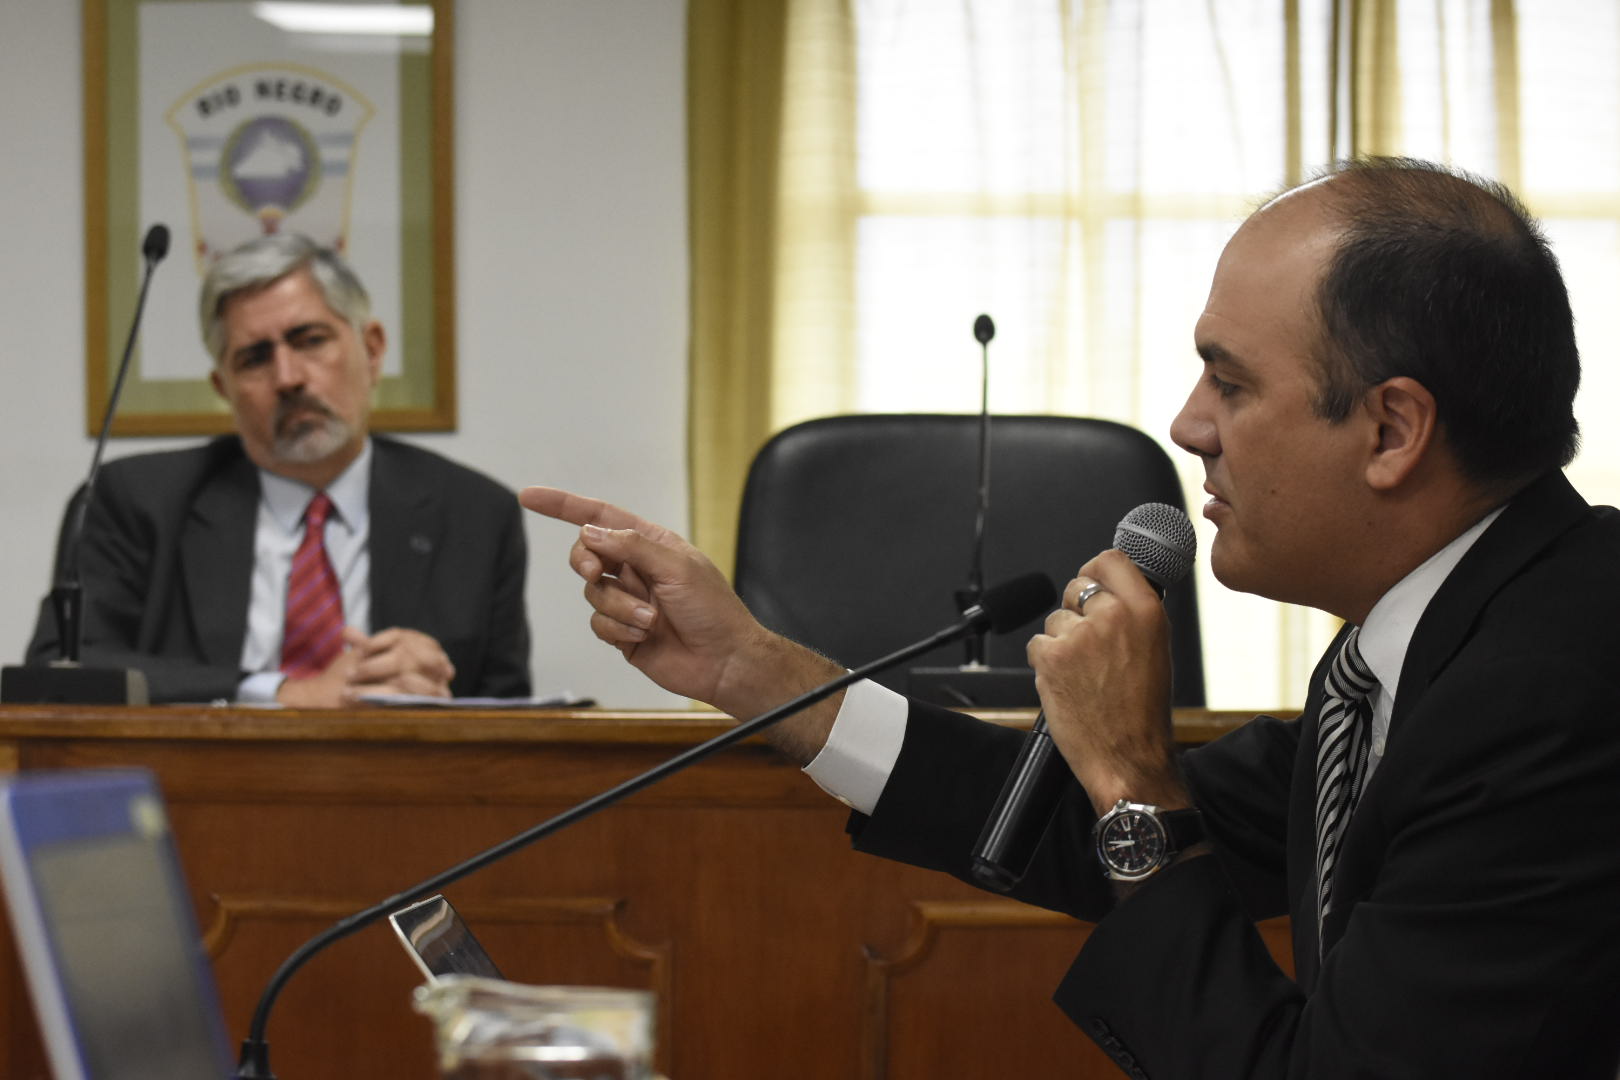 El fiscal Márquez Gauna pidió que declaren responsable al médico imputado de incumplimiento de los deberes de funcionario público. (Foto Florencia Salto)